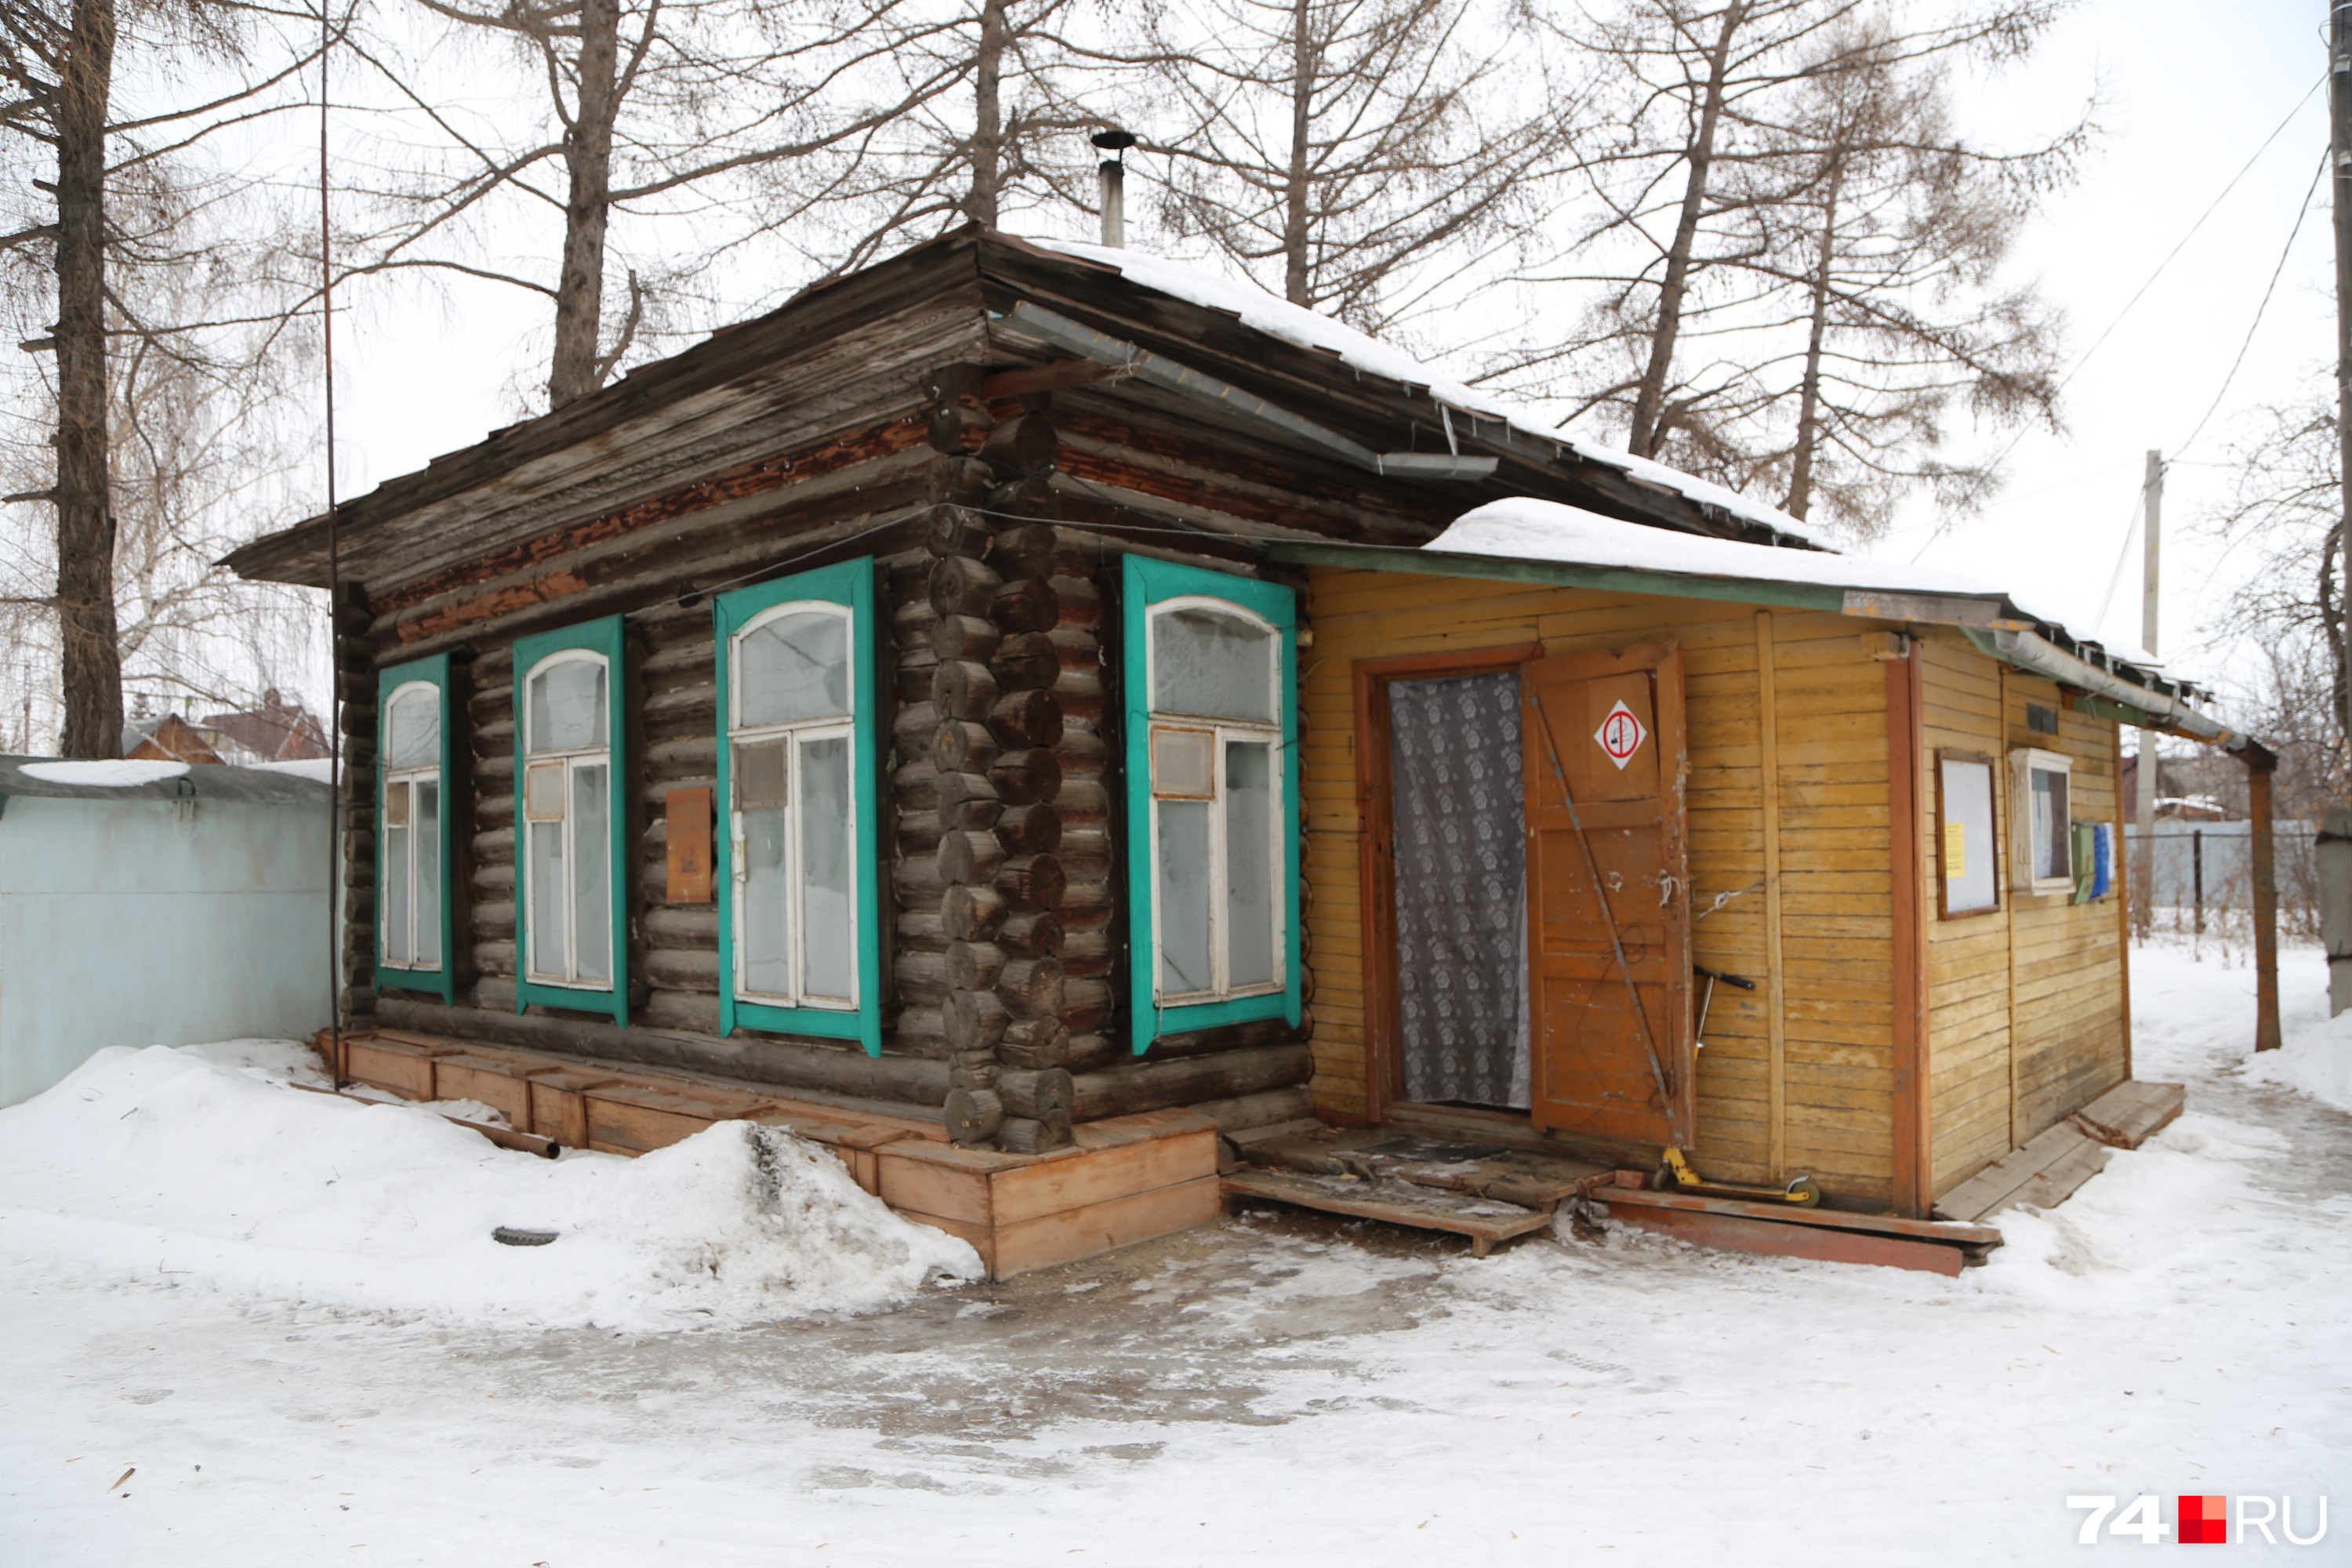 Николай Шевченко, его жена, трое детей и мама живут вот в этом домике